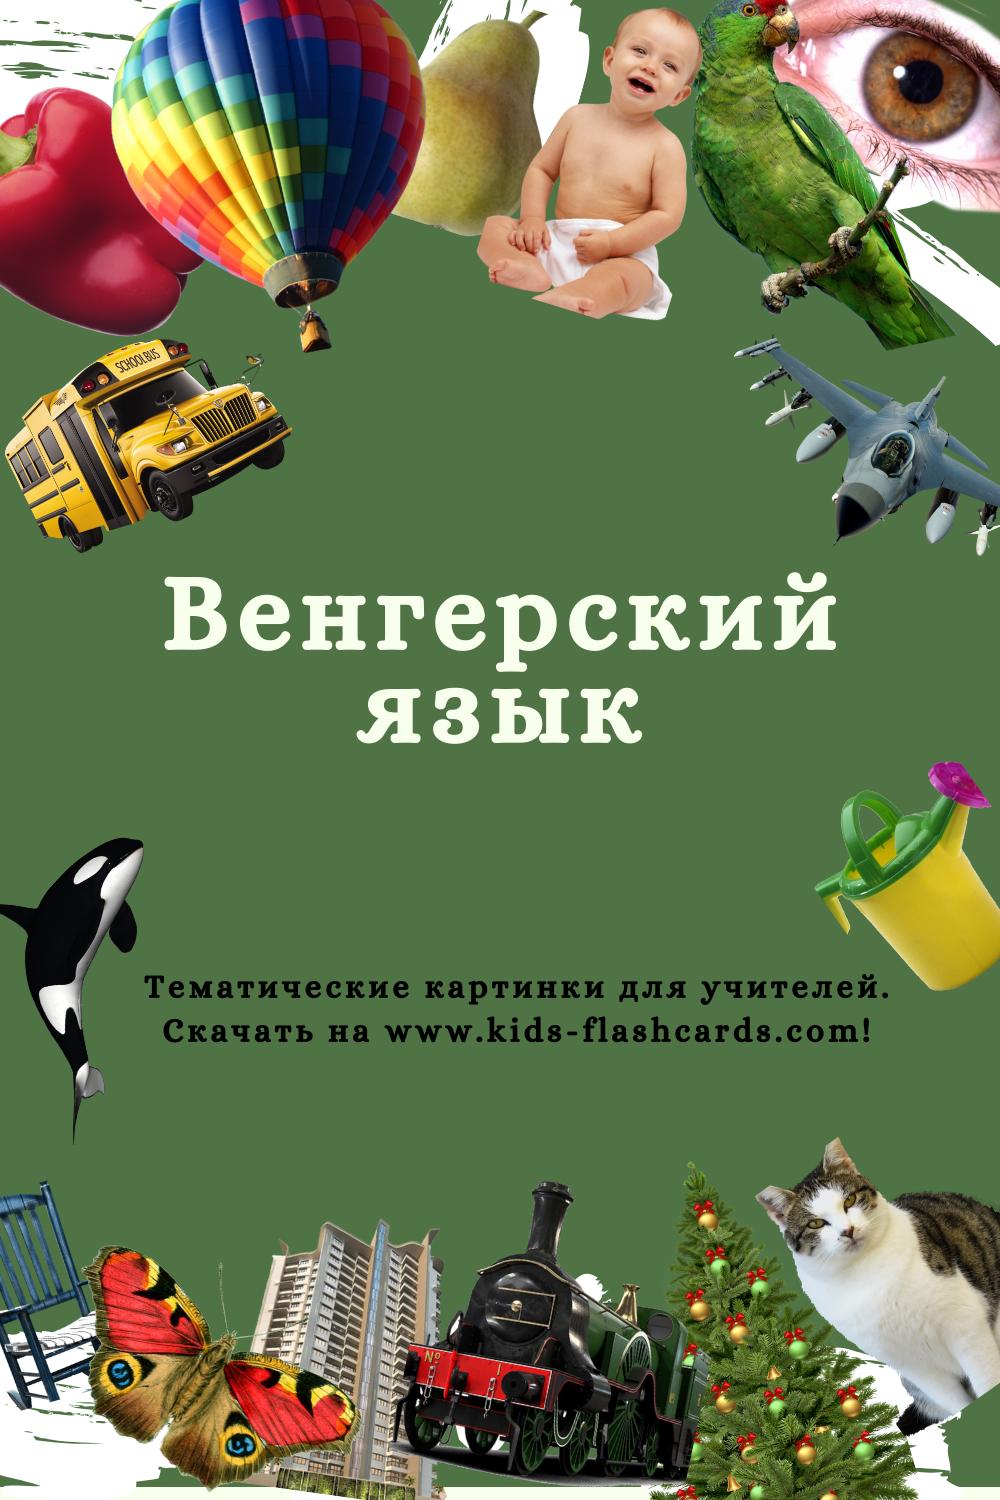 Венгерский язык - распечатки для детей